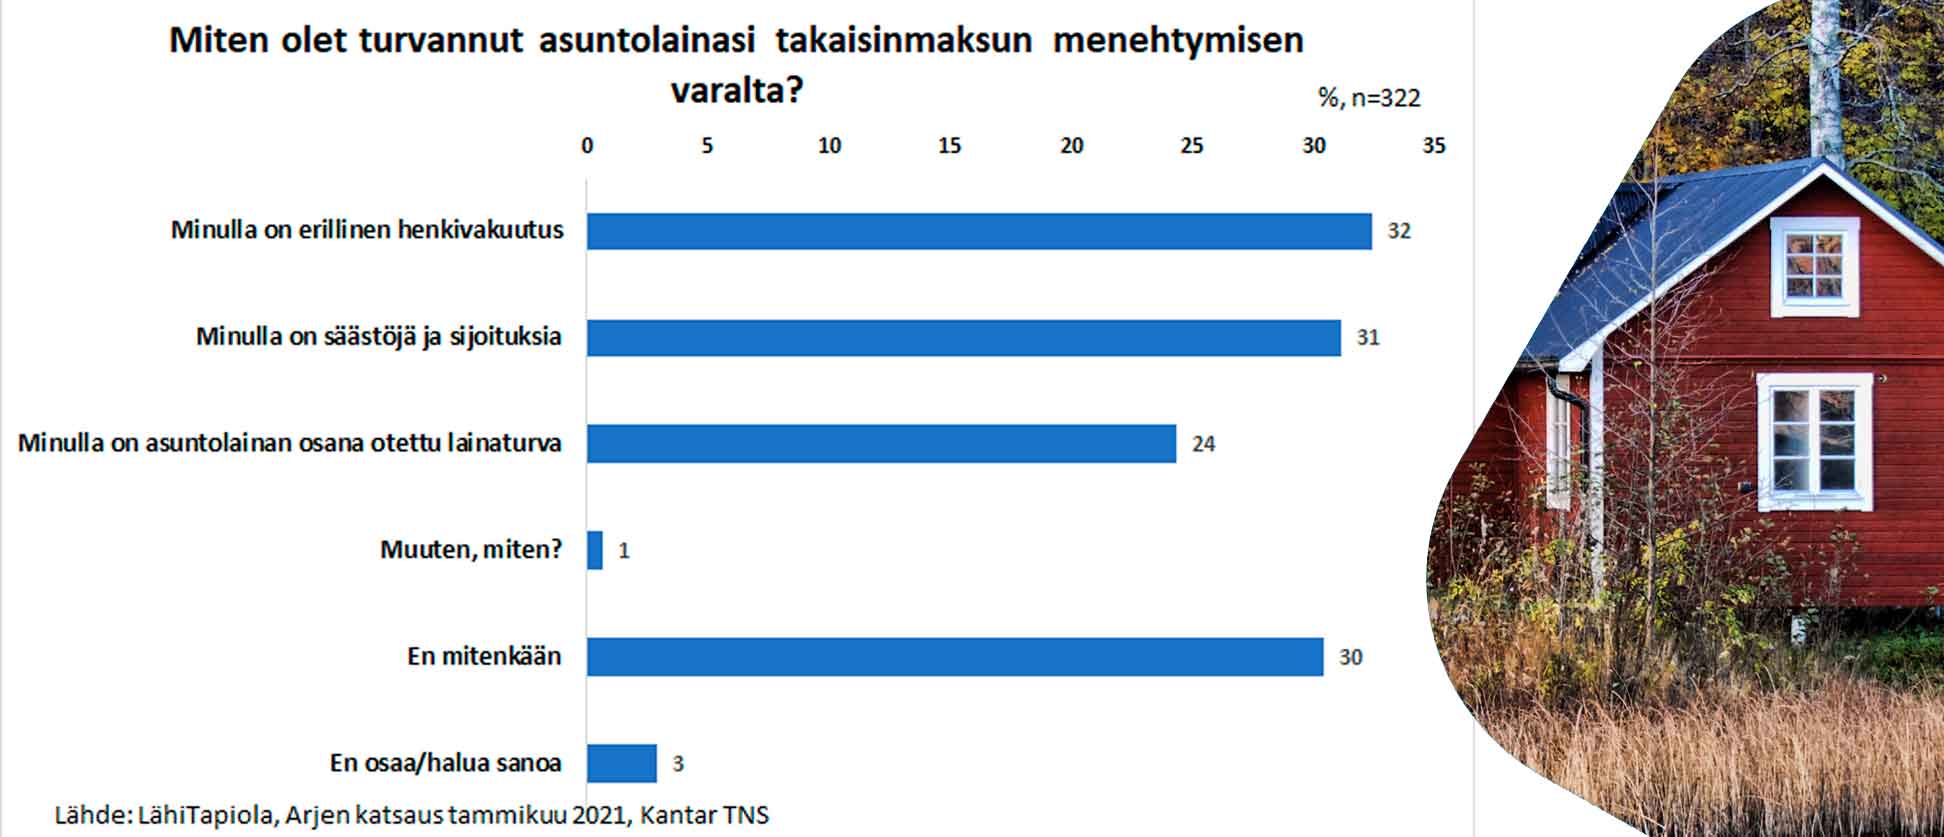 Kuvassa suomalaisten vastaukset kysymykseen, miten olet varautunut asuntolainasi takaisinmaksuun, jos menehdyt